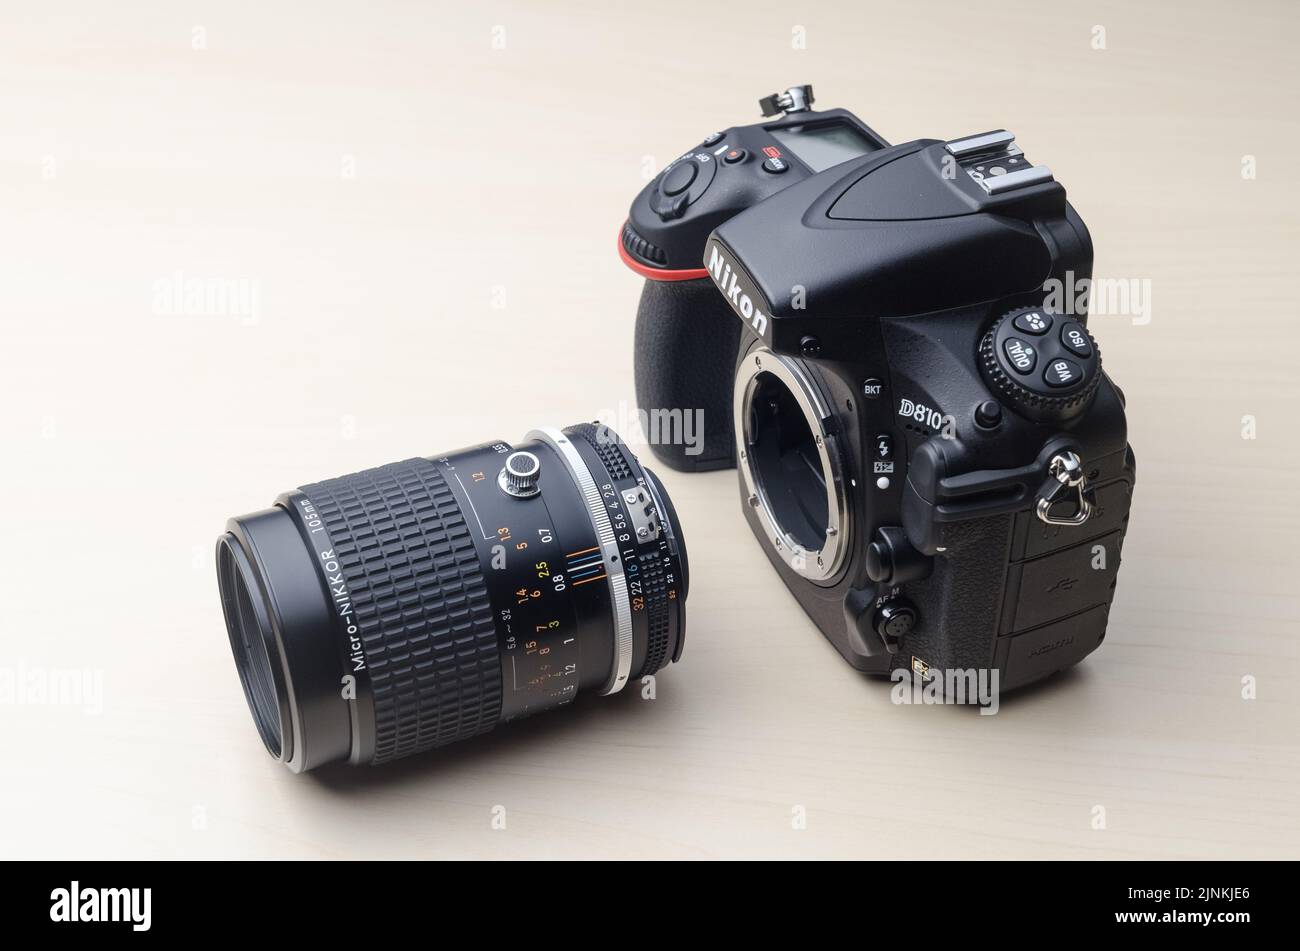 Fotocamera reflex digitale professionale Nikon D810 DSLR a obiettivo singolo con obiettivo a messa a fuoco manuale Micro Nikkor 105mm 2,8 Foto Stock